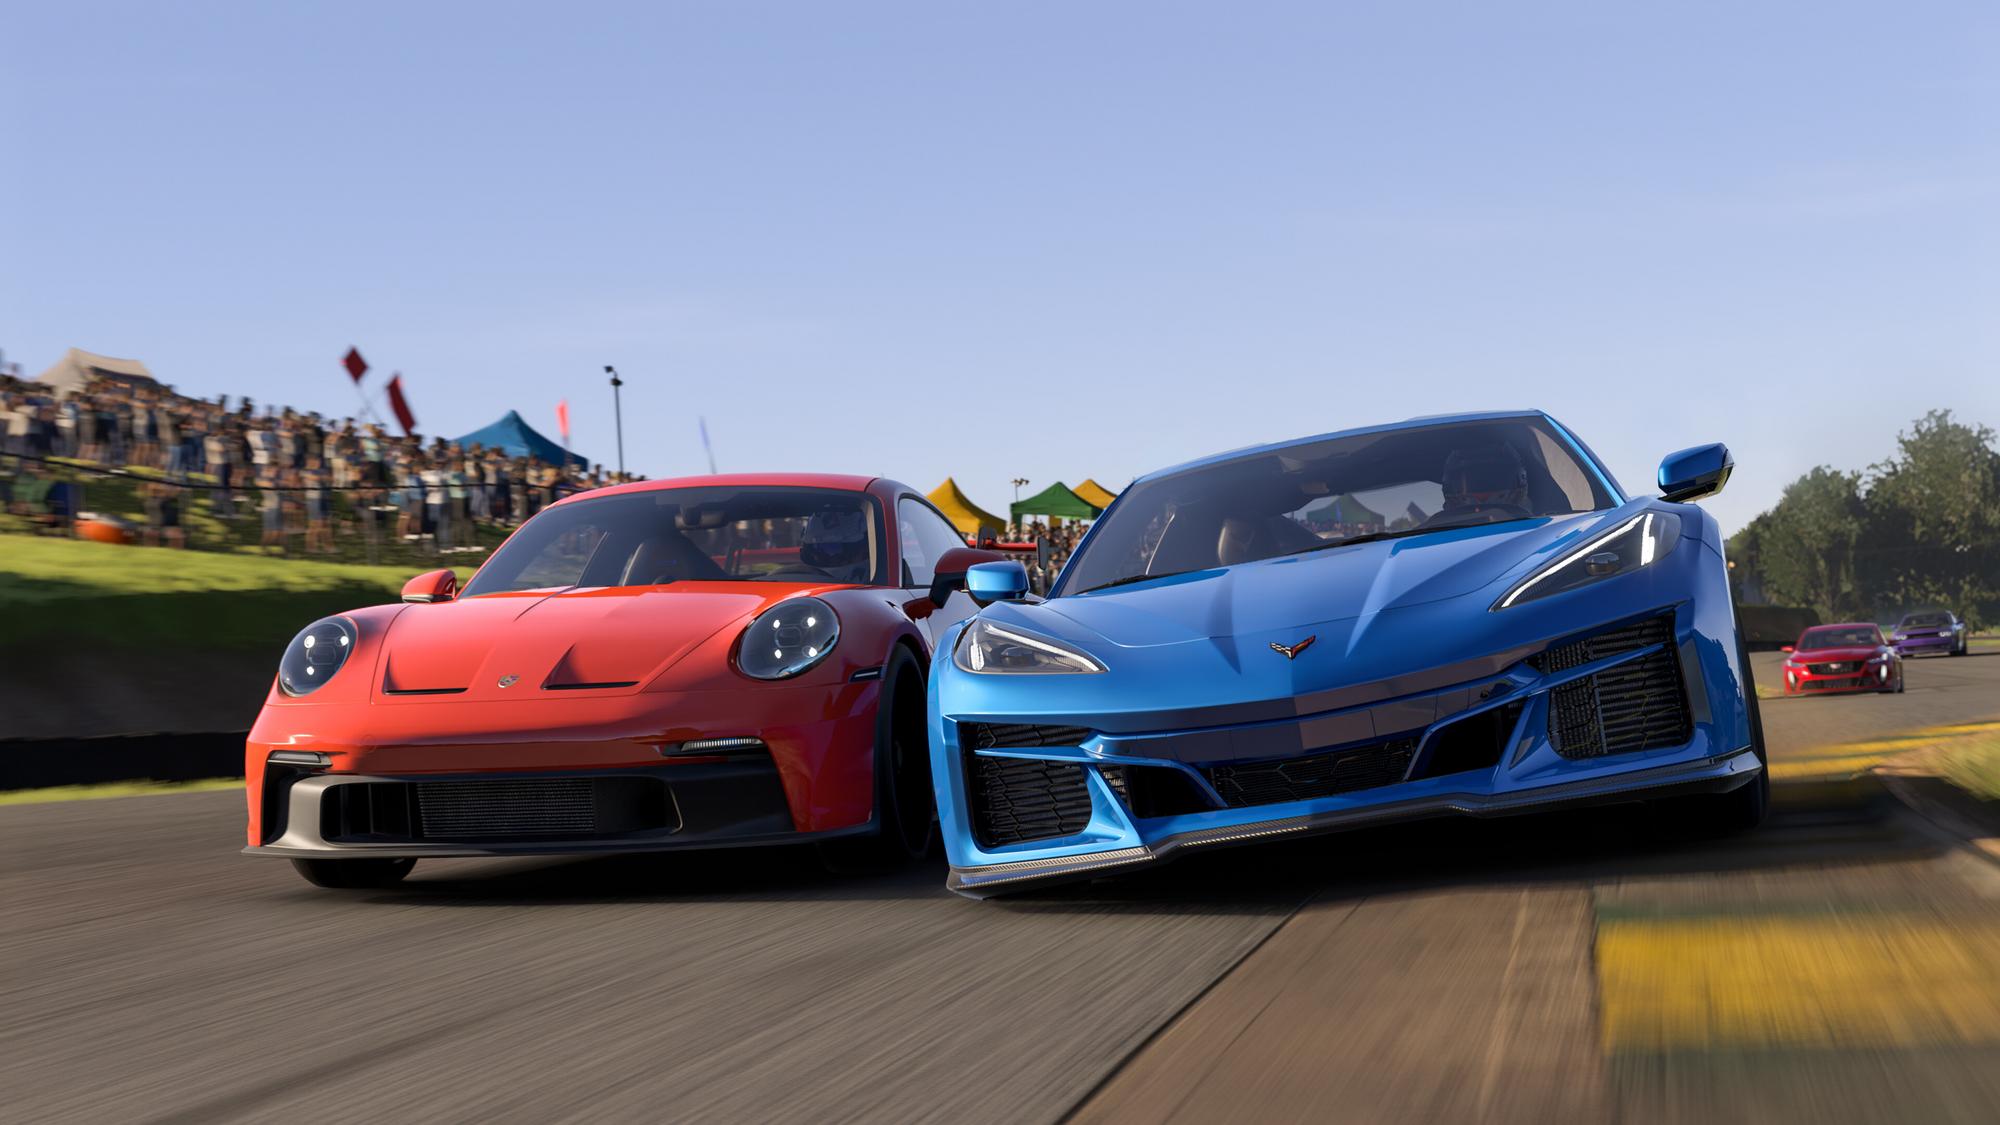 Obrázok z hry Forza Motorsport.